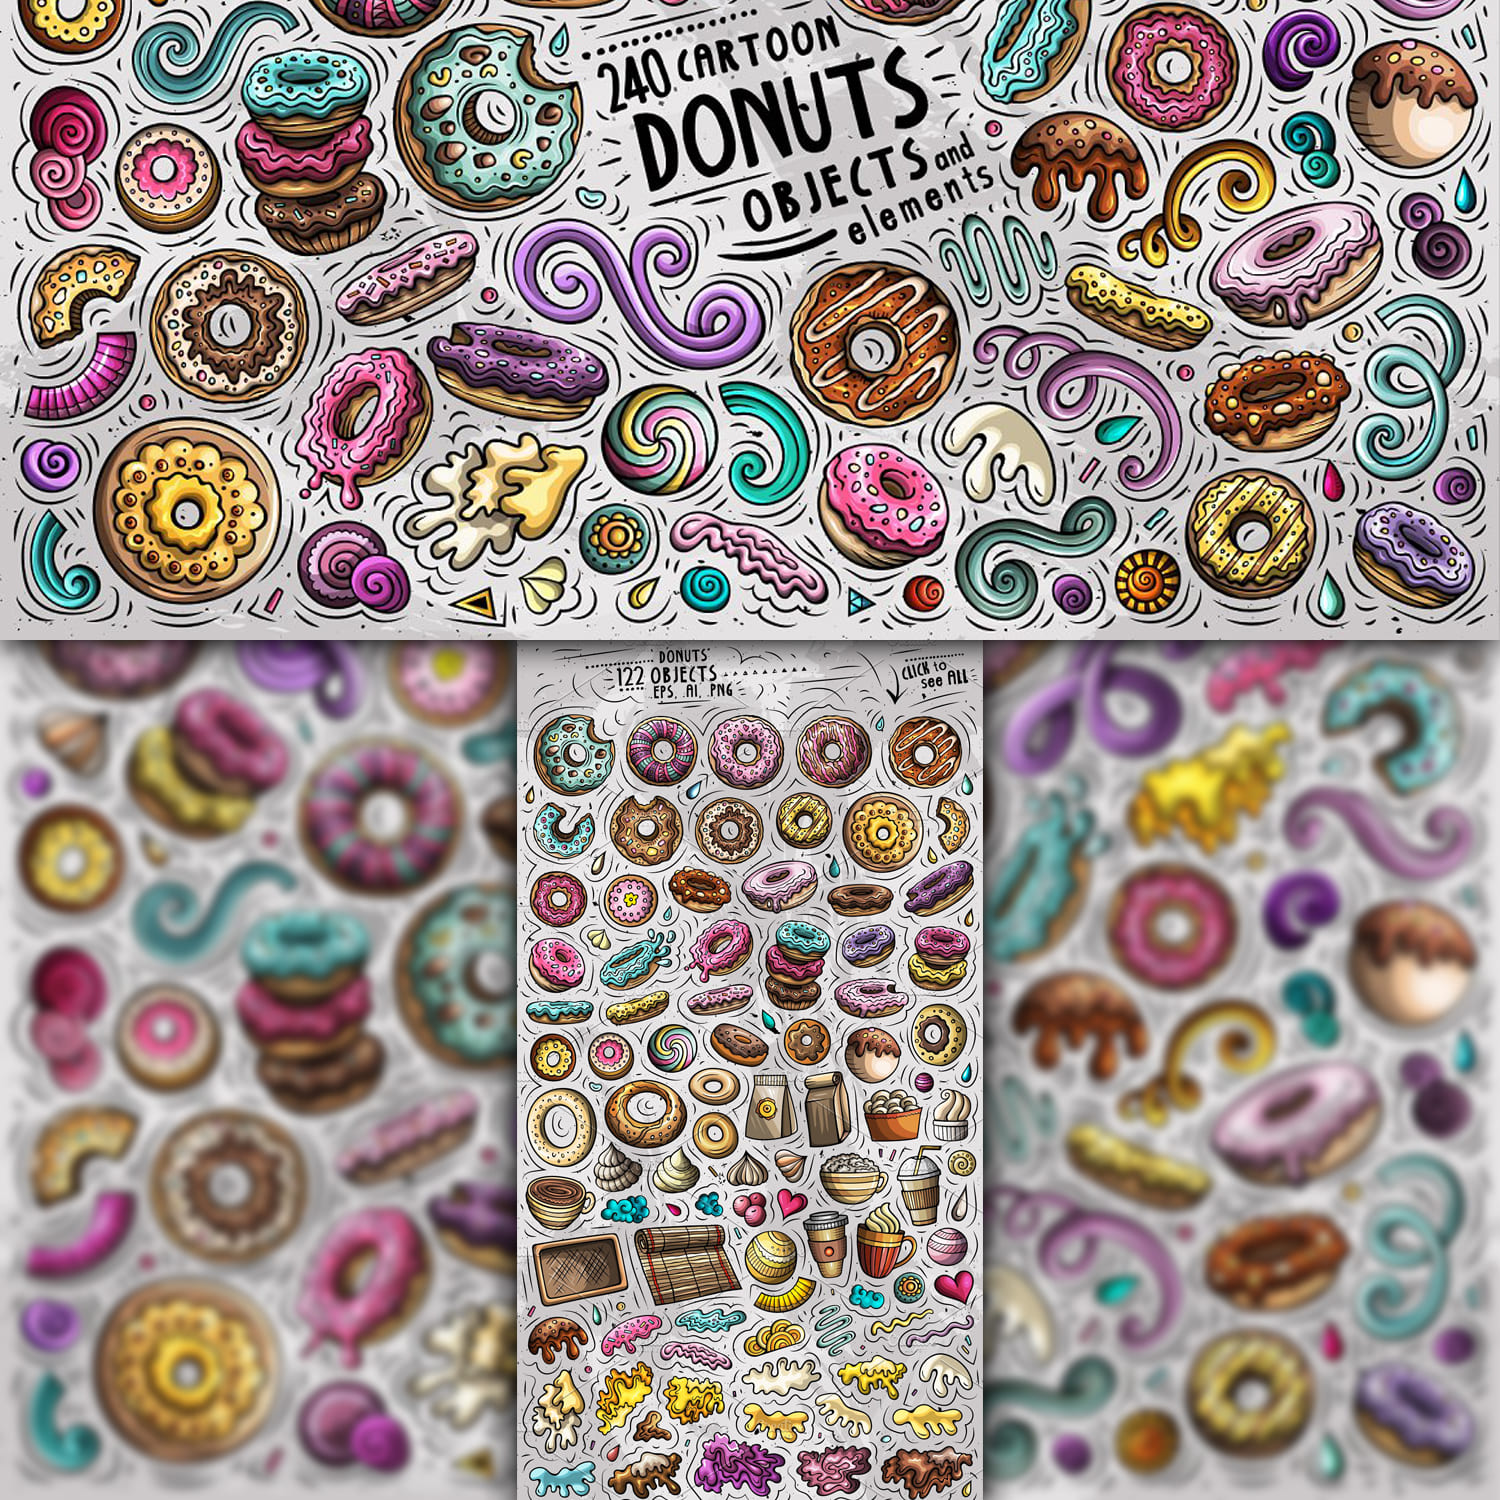 Donuts Cartoon Vector Objects Set 1500 1500 1.